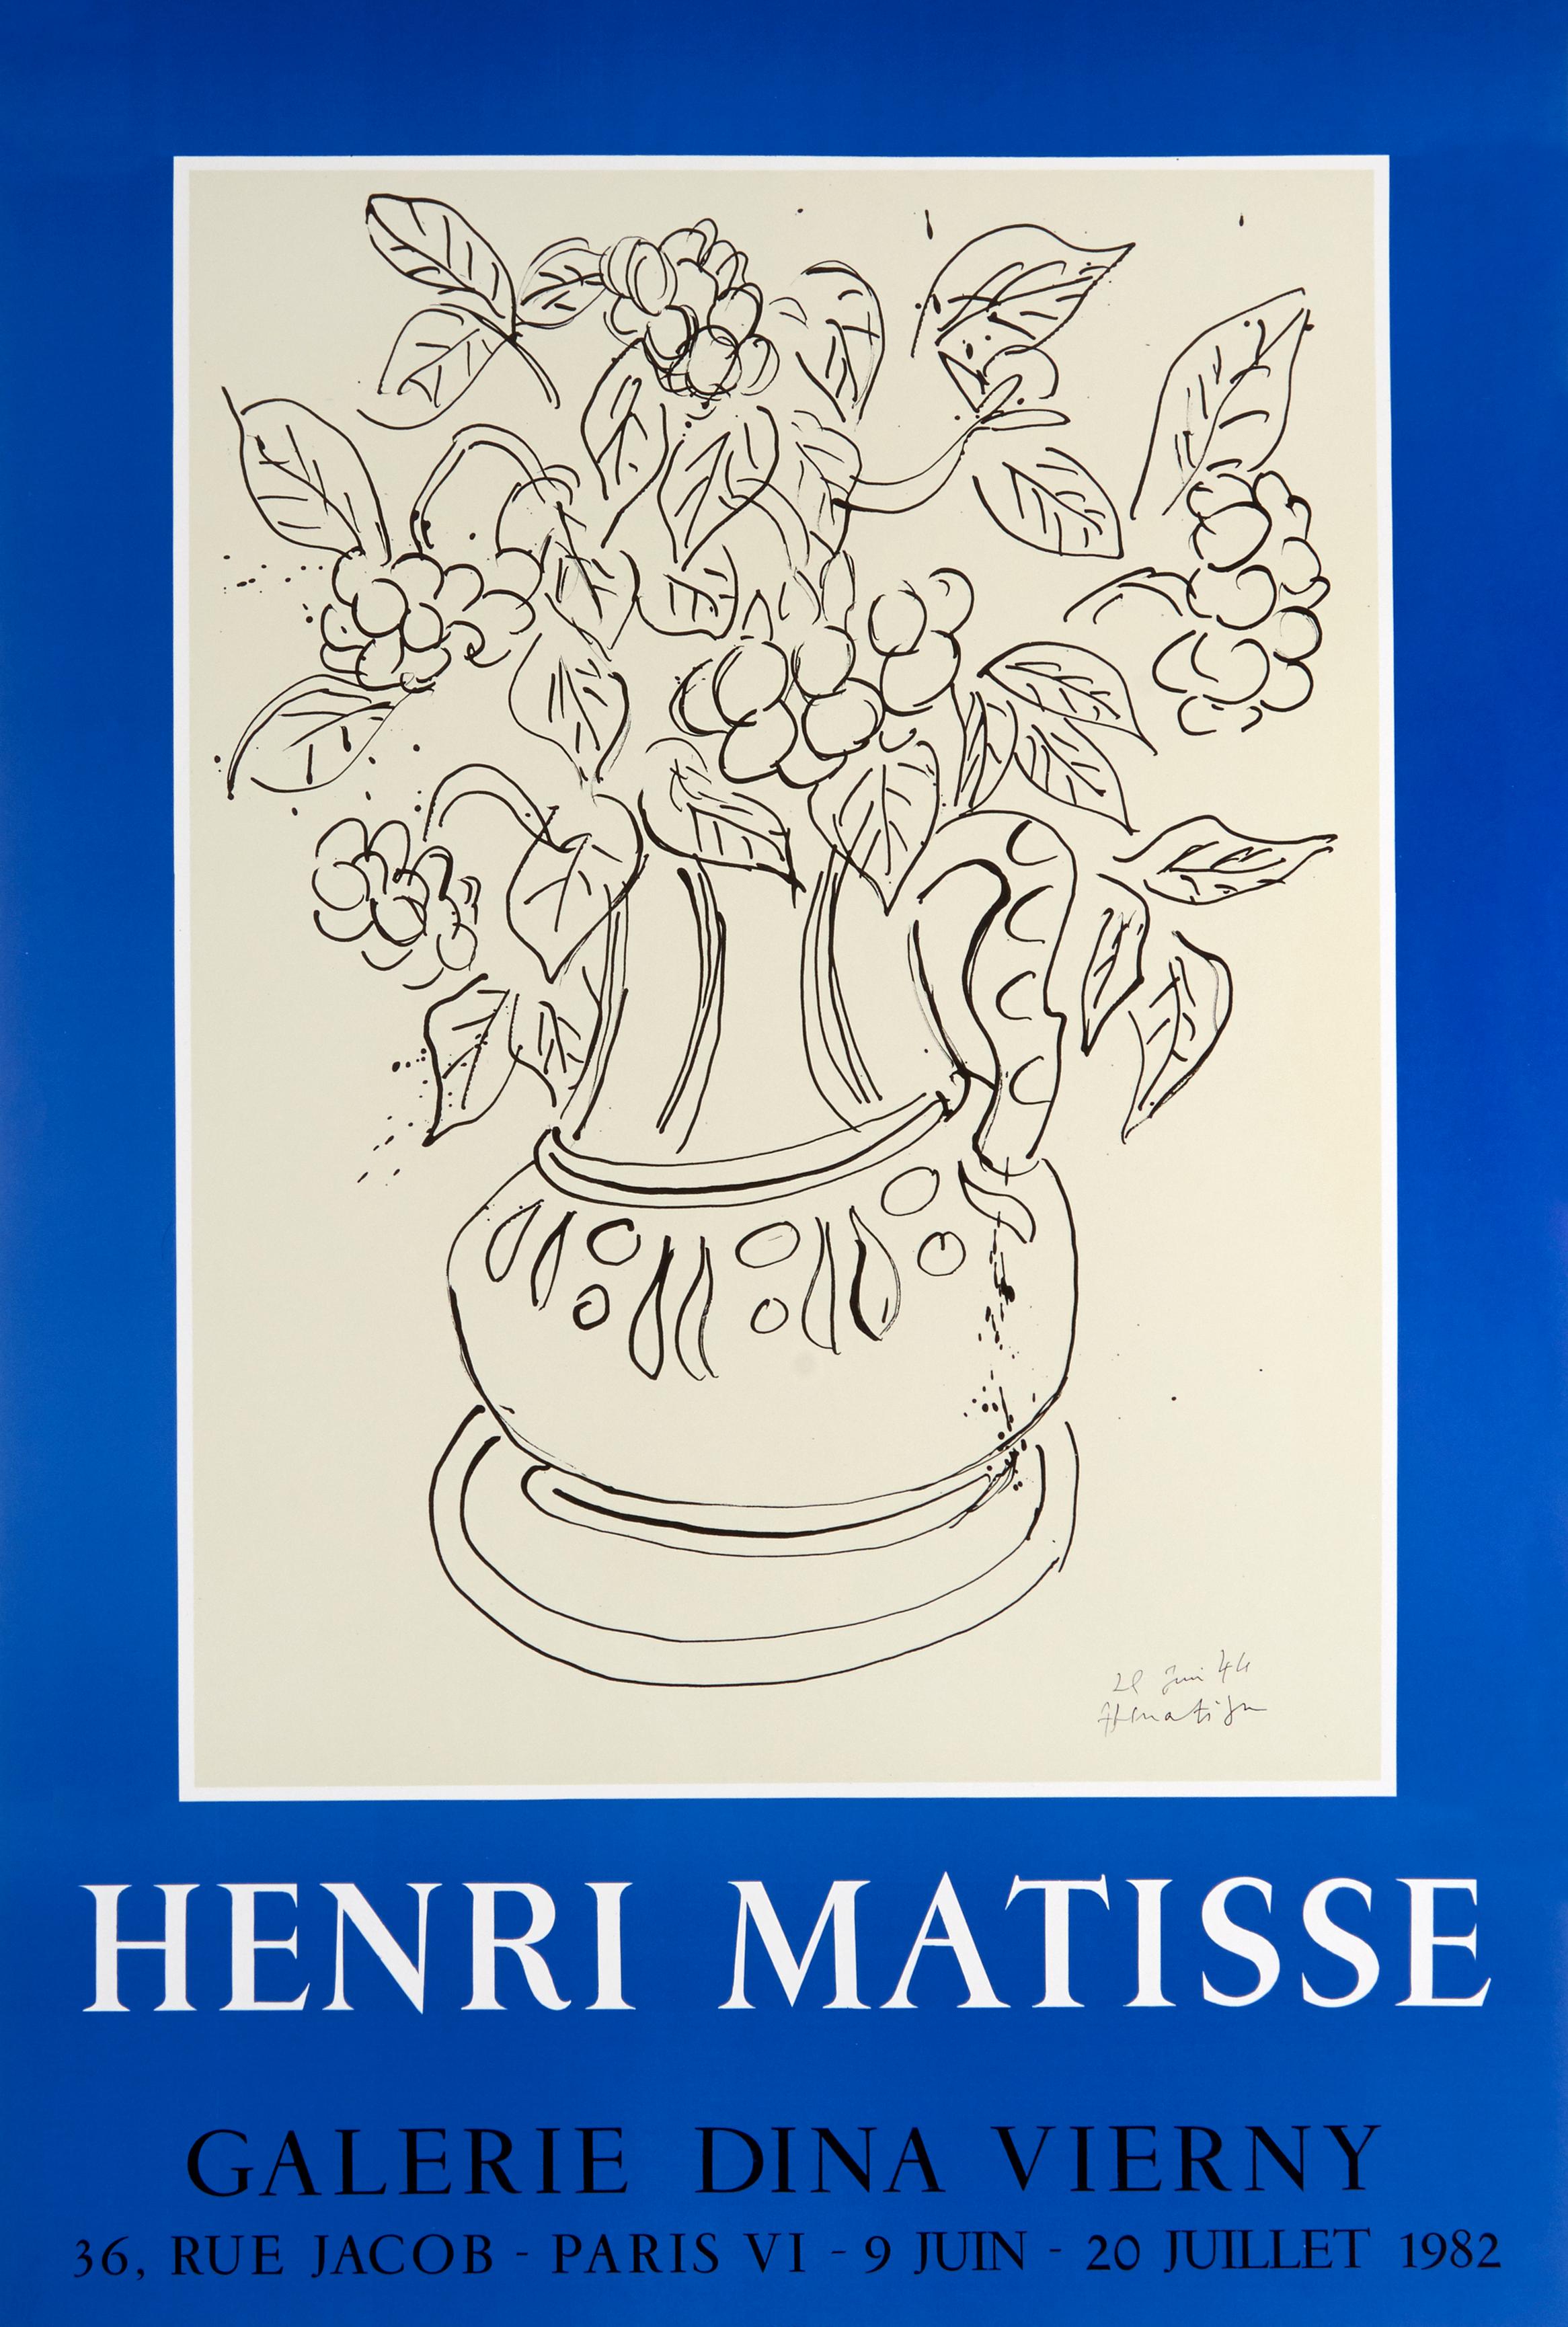 Lithographieplakat der Galerie Dina Vierny von Henri Matisse